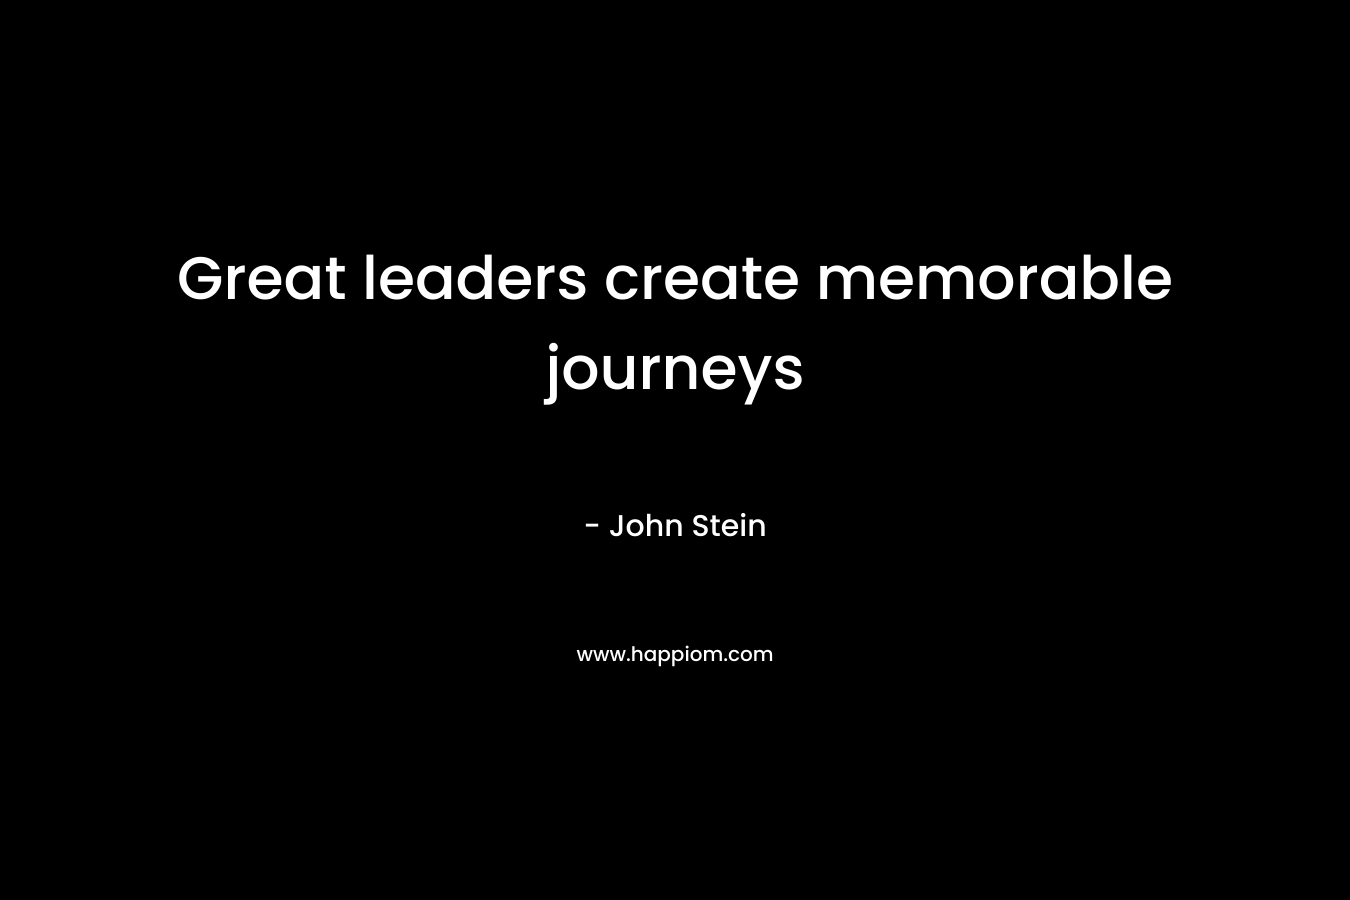 Great leaders create memorable journeys